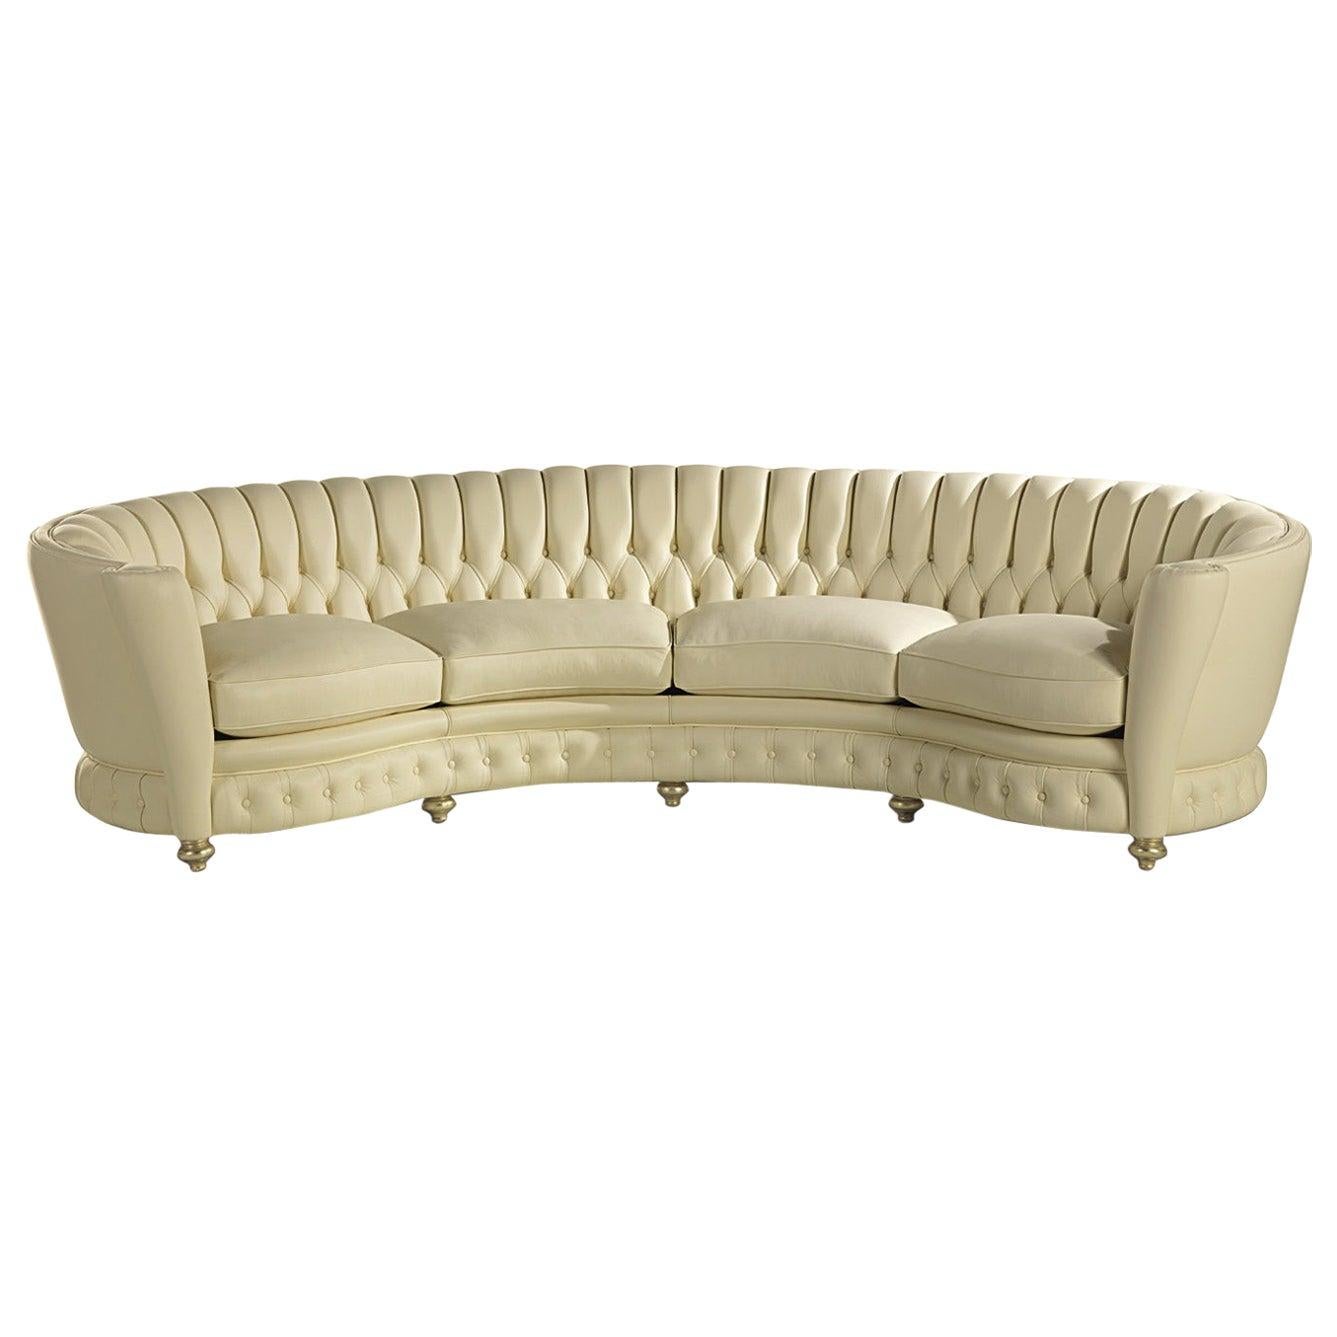 Das Millennium-Sofa mit Lederbezug 2261 passt mit seiner geschwungenen Linie wunderbar in exklusive Wohnräume und bringt Eleganz in die Einrichtung, ohne auf einen hohen Sitzkomfort zu verzichten. Er ist vollständig mit Leder gepolstert und verfügt